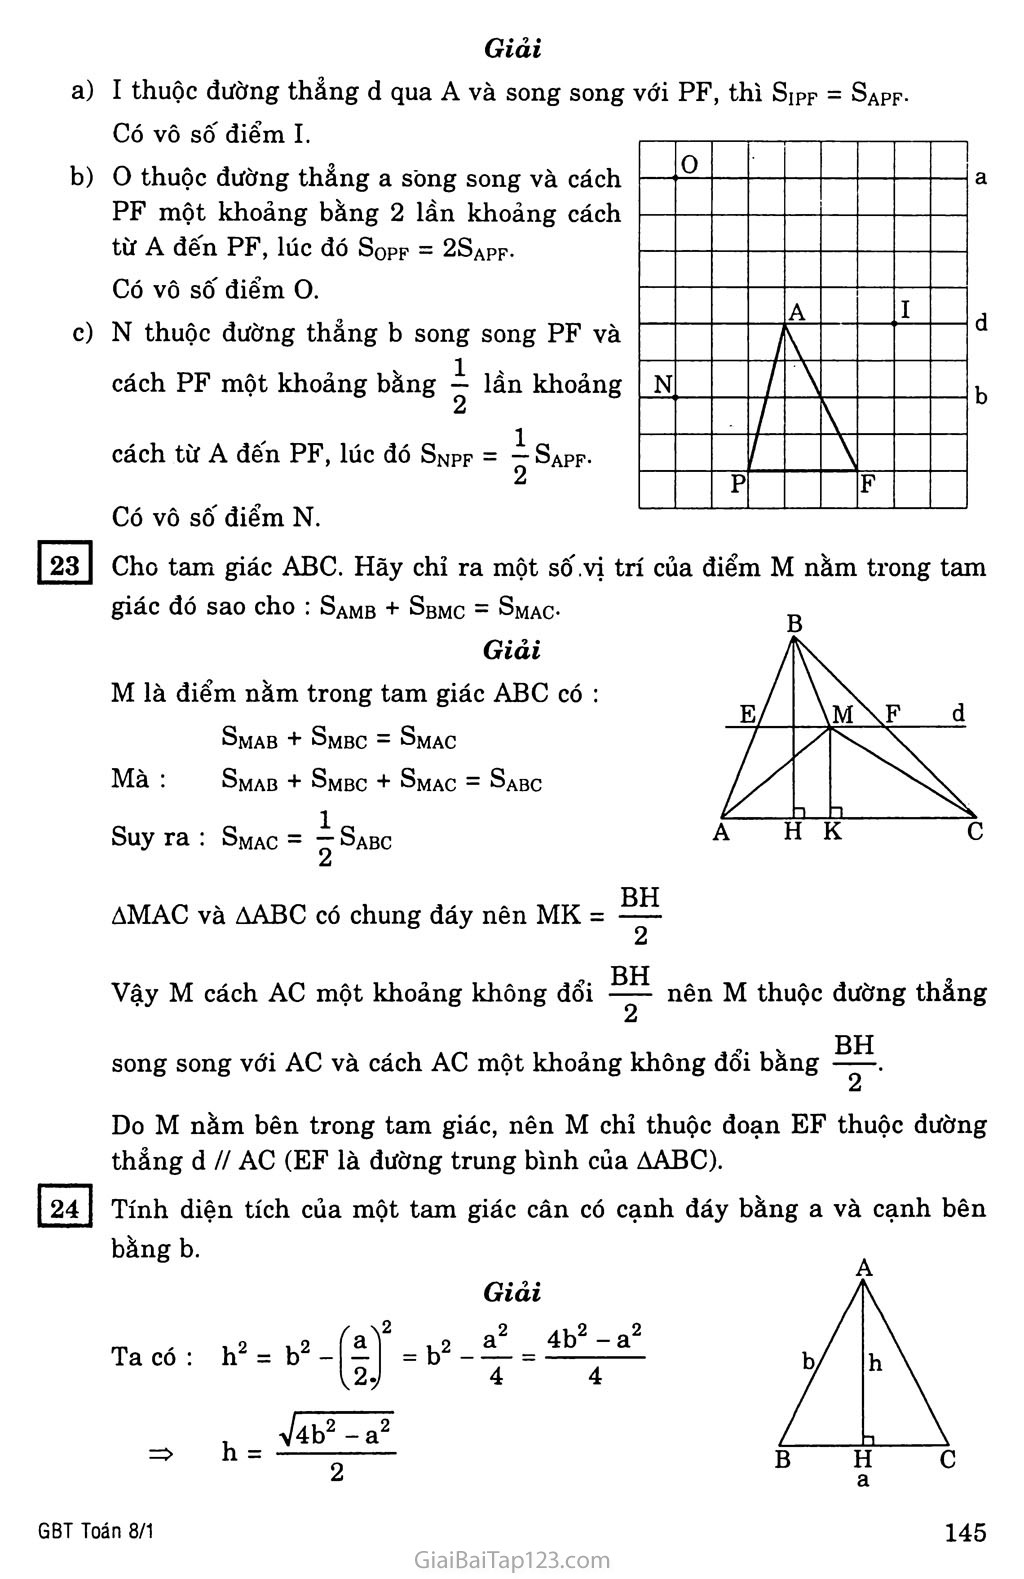 §3. Diện tích tam giác trang 4